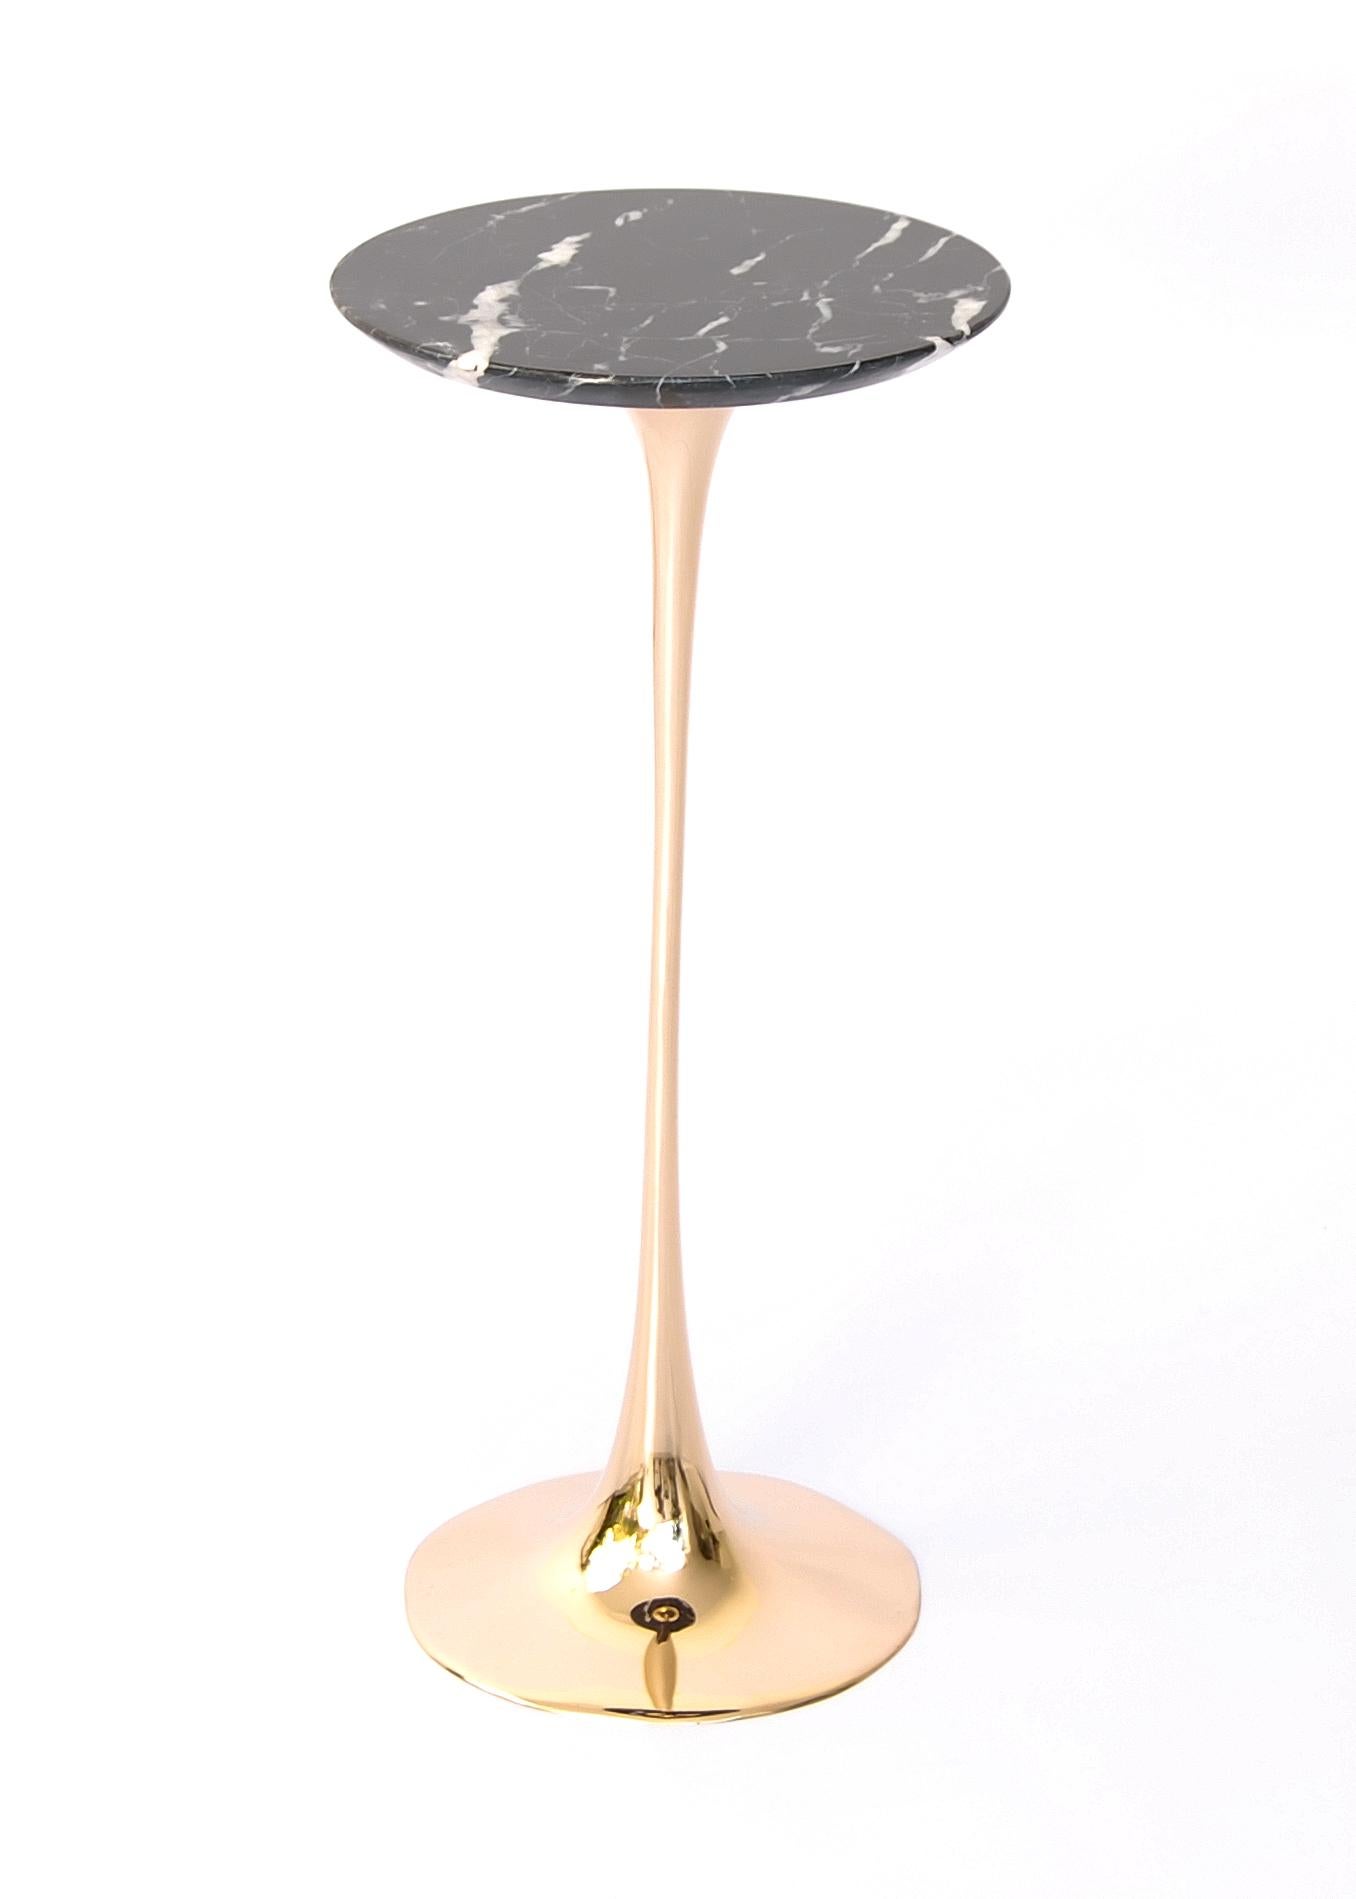 Table à boire Apple avec plateau en marbre Nero Marquina par Fakasaka Design
Dimensions : L 30 cm, P 30 cm, H 61 cm.
MATERIAL : base en bronze poli, plateau en marbre Nero Marquina.
 
Disponible également dans différents matériaux de plateau de